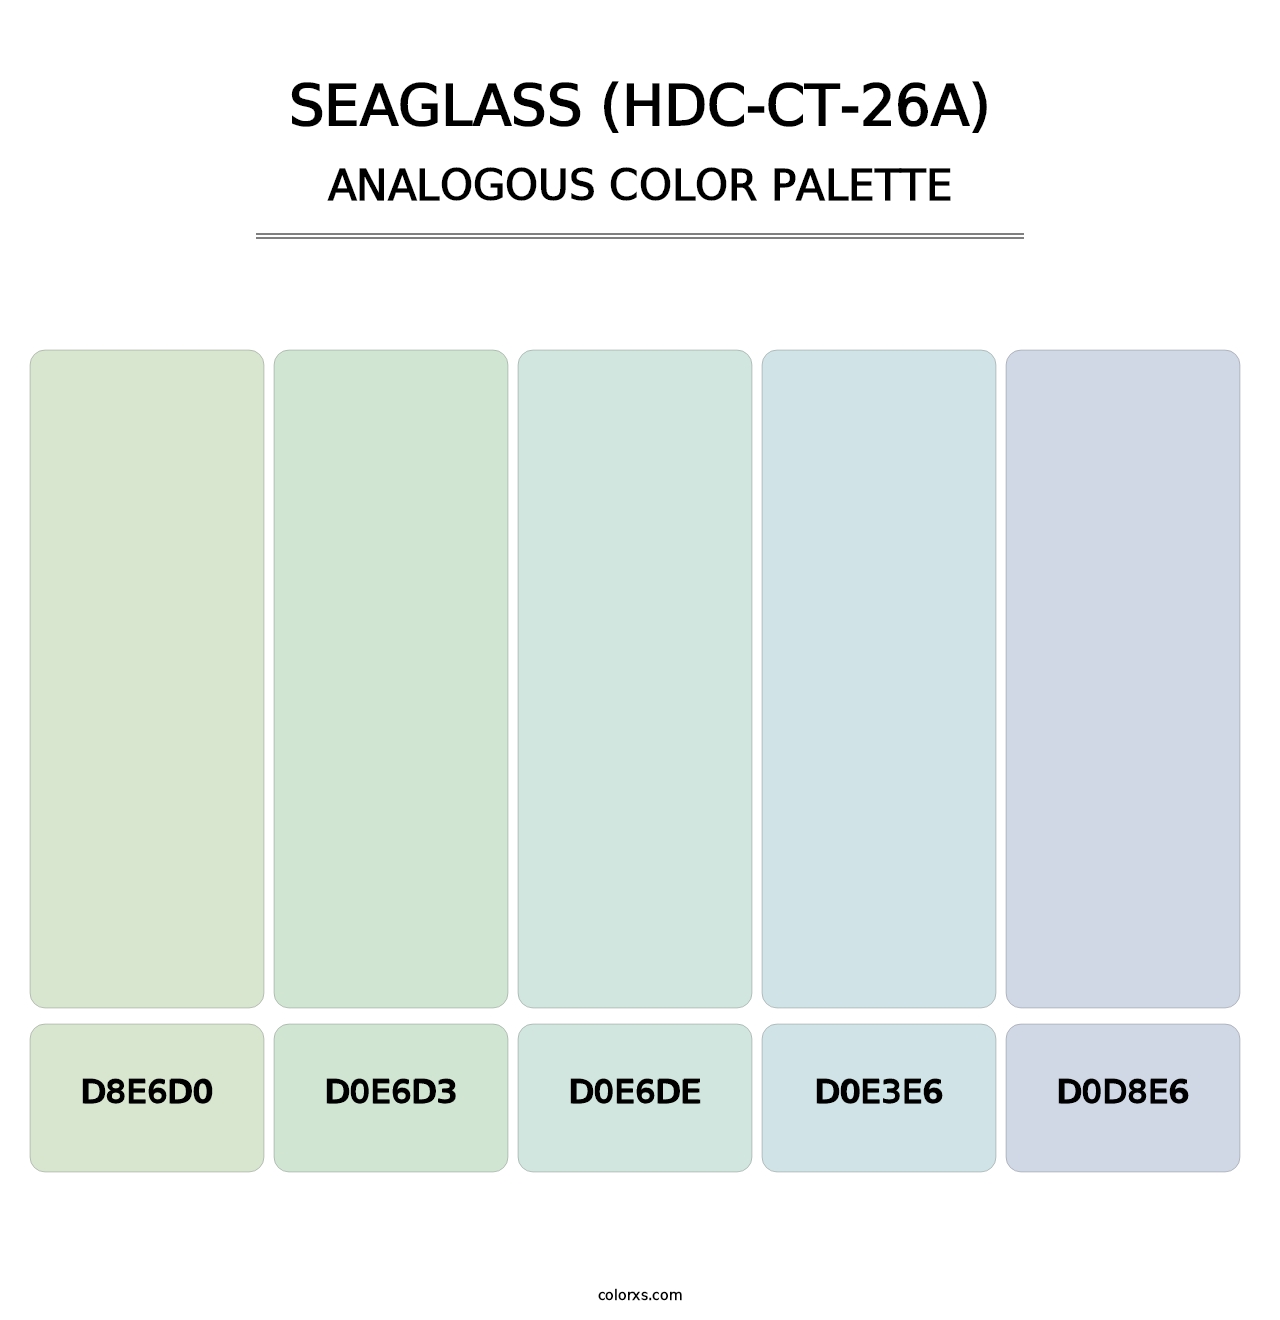 Seaglass (HDC-CT-26A) - Analogous Color Palette